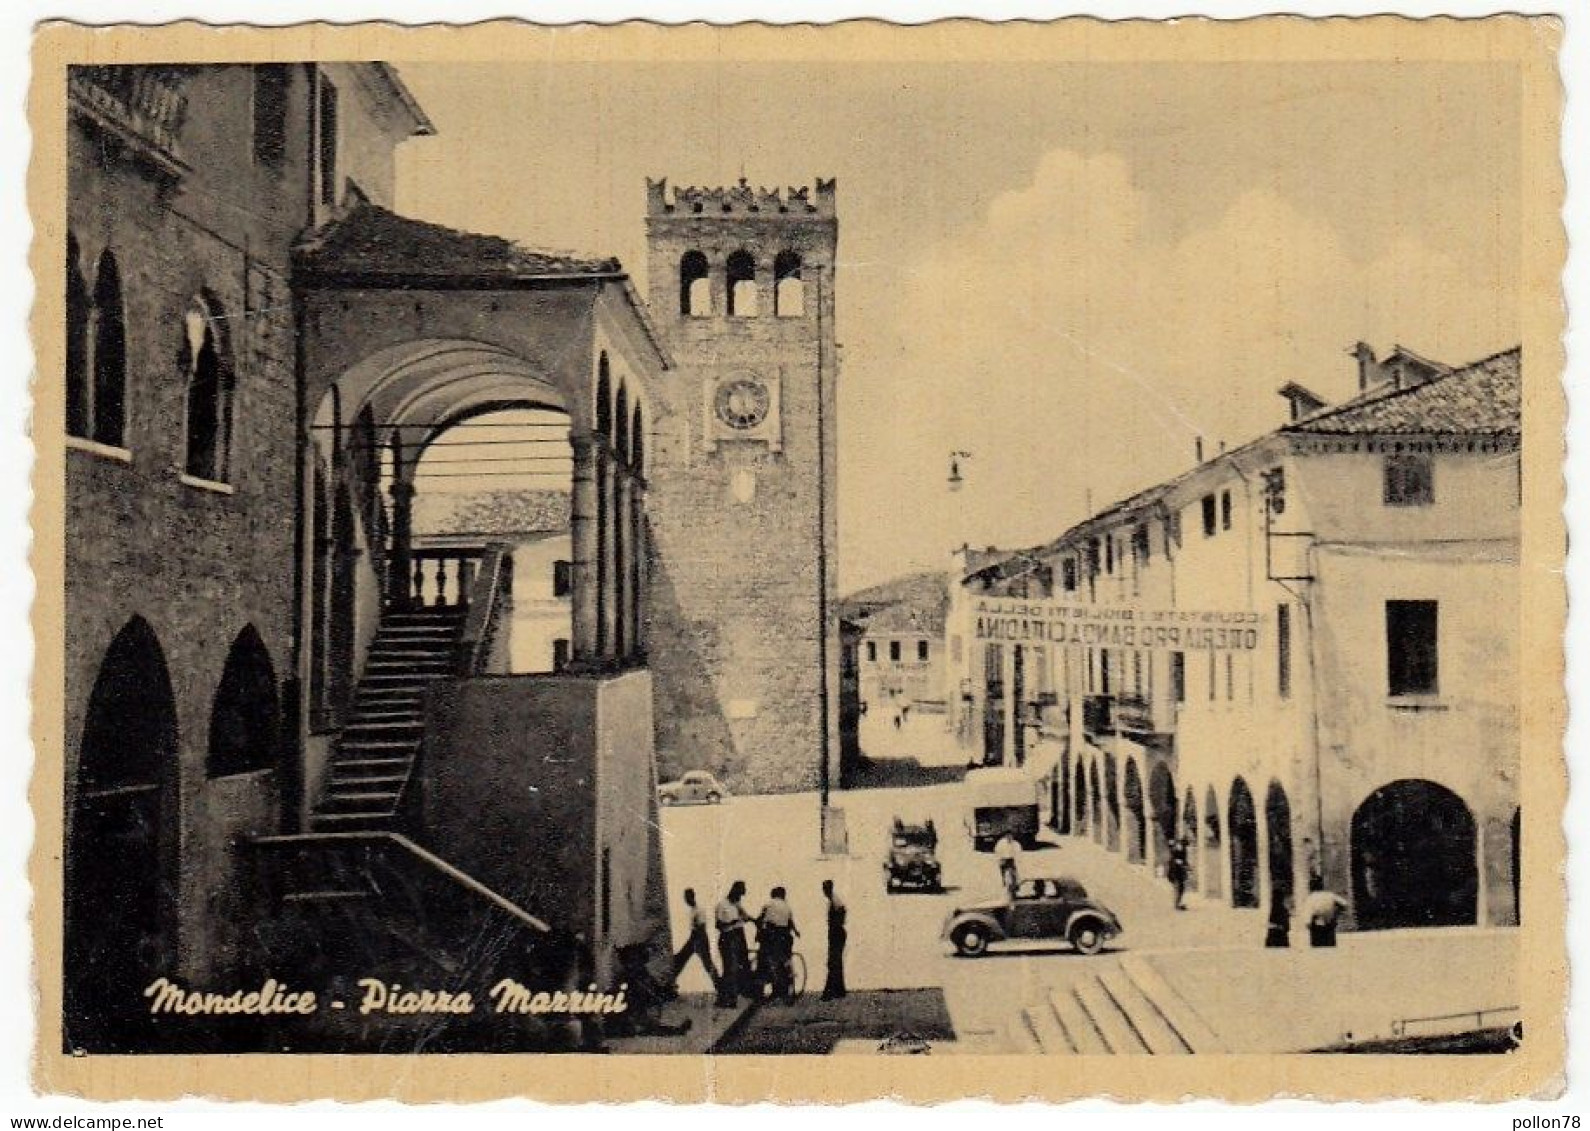 MONSELICE - PIAZZA MAZZINI - PADOVA - PRIMI ANNI '50 - AUTOMOBILI - CARS - FIAT TOPOLINO - Padova (Padua)